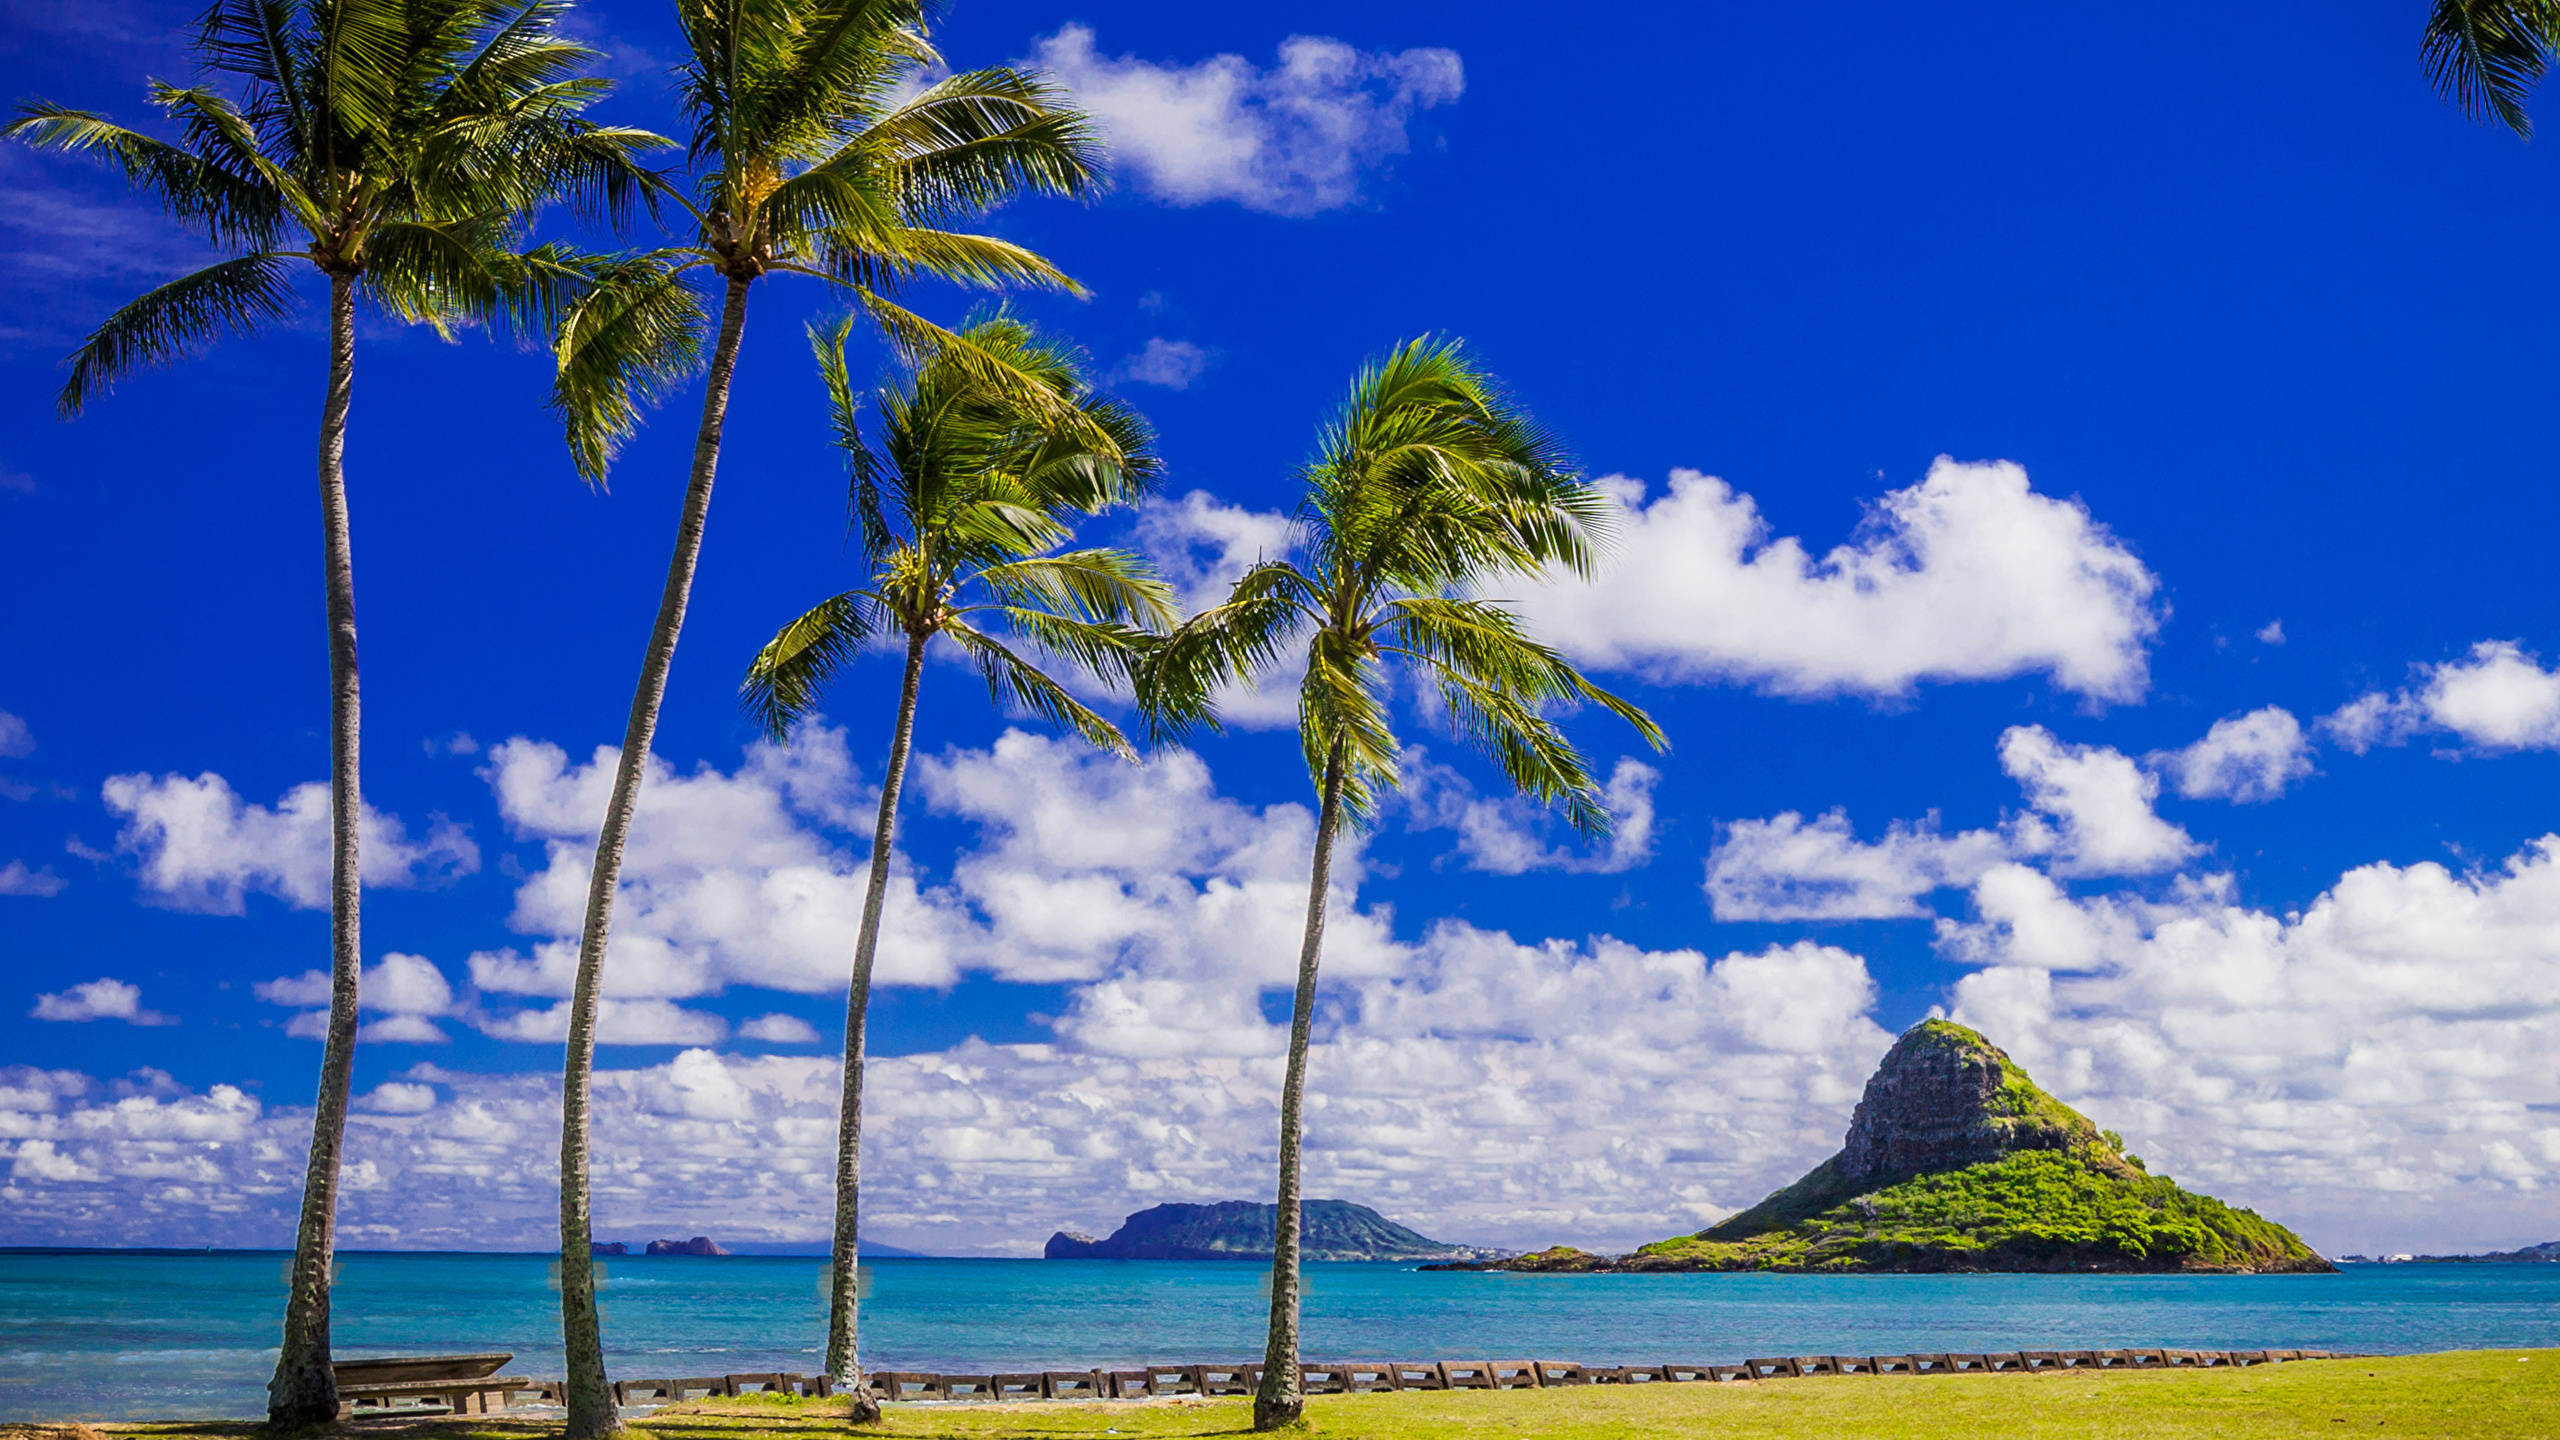 壁紙 2560x1440 熱帯 海岸 空 アメリカ合衆国 ハワイ州 ヤシ 雲 自然 ダウンロード 写真